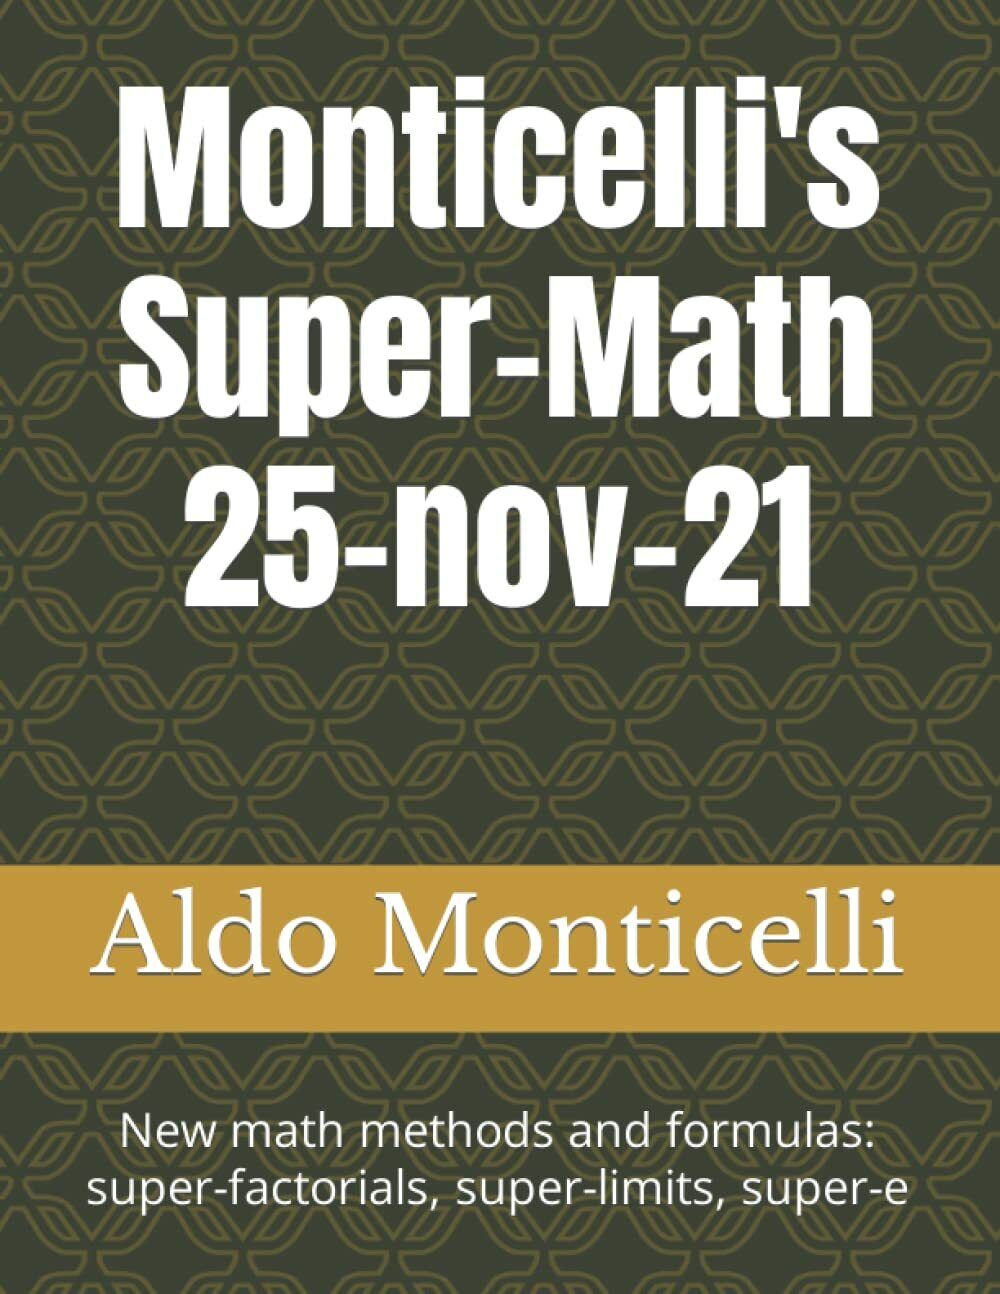 Monticelli?s Super-Math 25-nov-21: New math methods and formulas: super-factoria